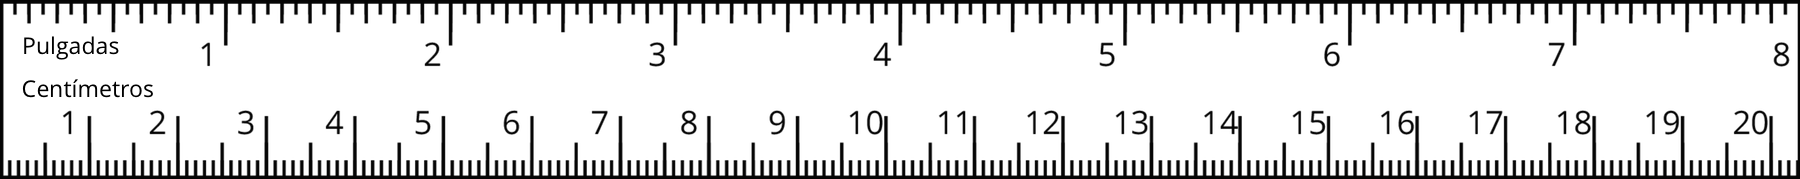 Regla con 8 pulgadas en la parte de arriba y 20 centímetros en la parte de abajo.